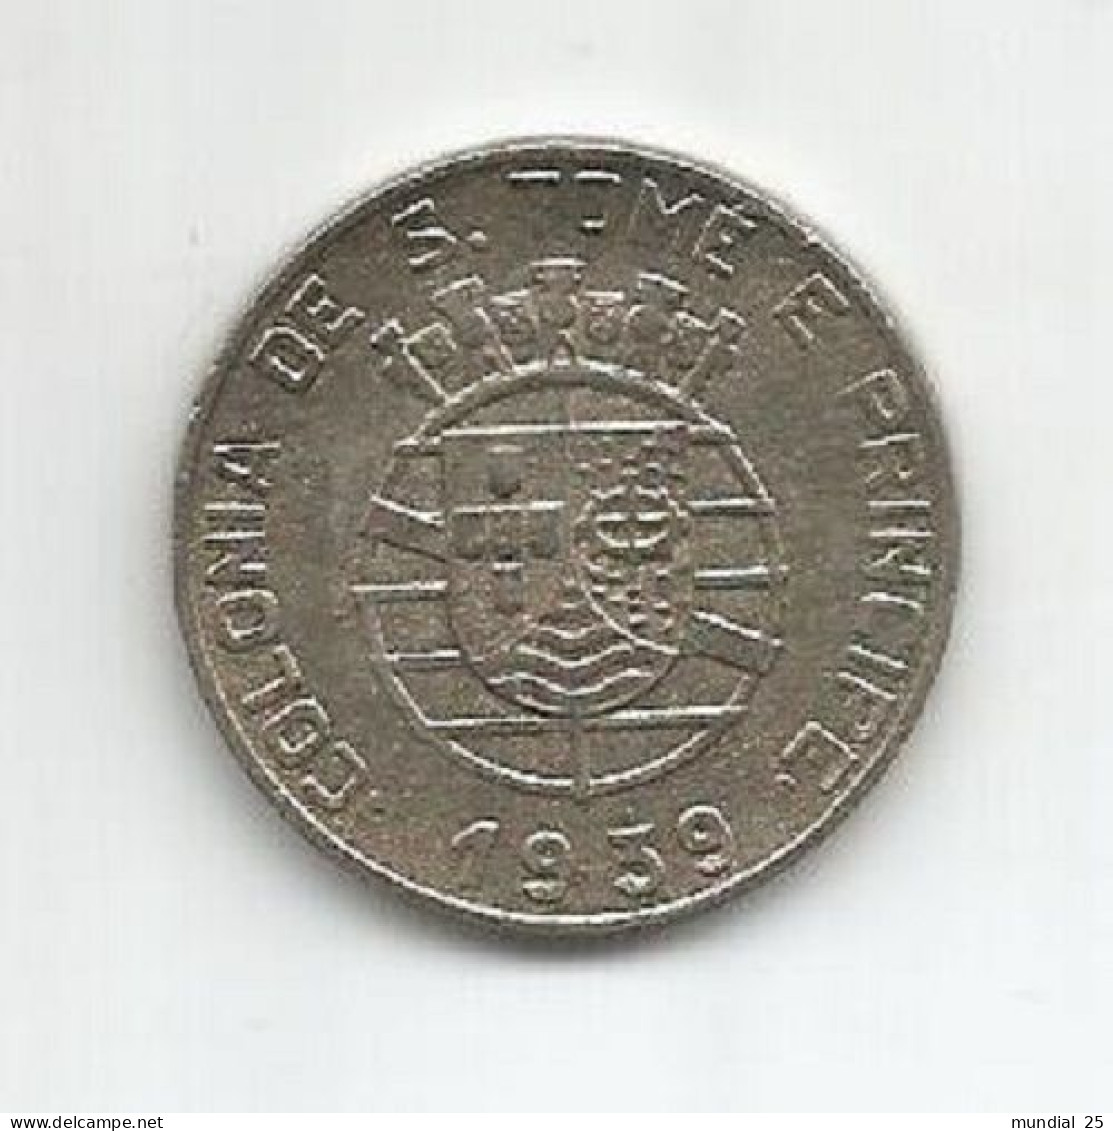 SAO TOME AND PRINCIPE PORTUGAL 1$00 ESCUDO 1939 - Sao Tome And Principe